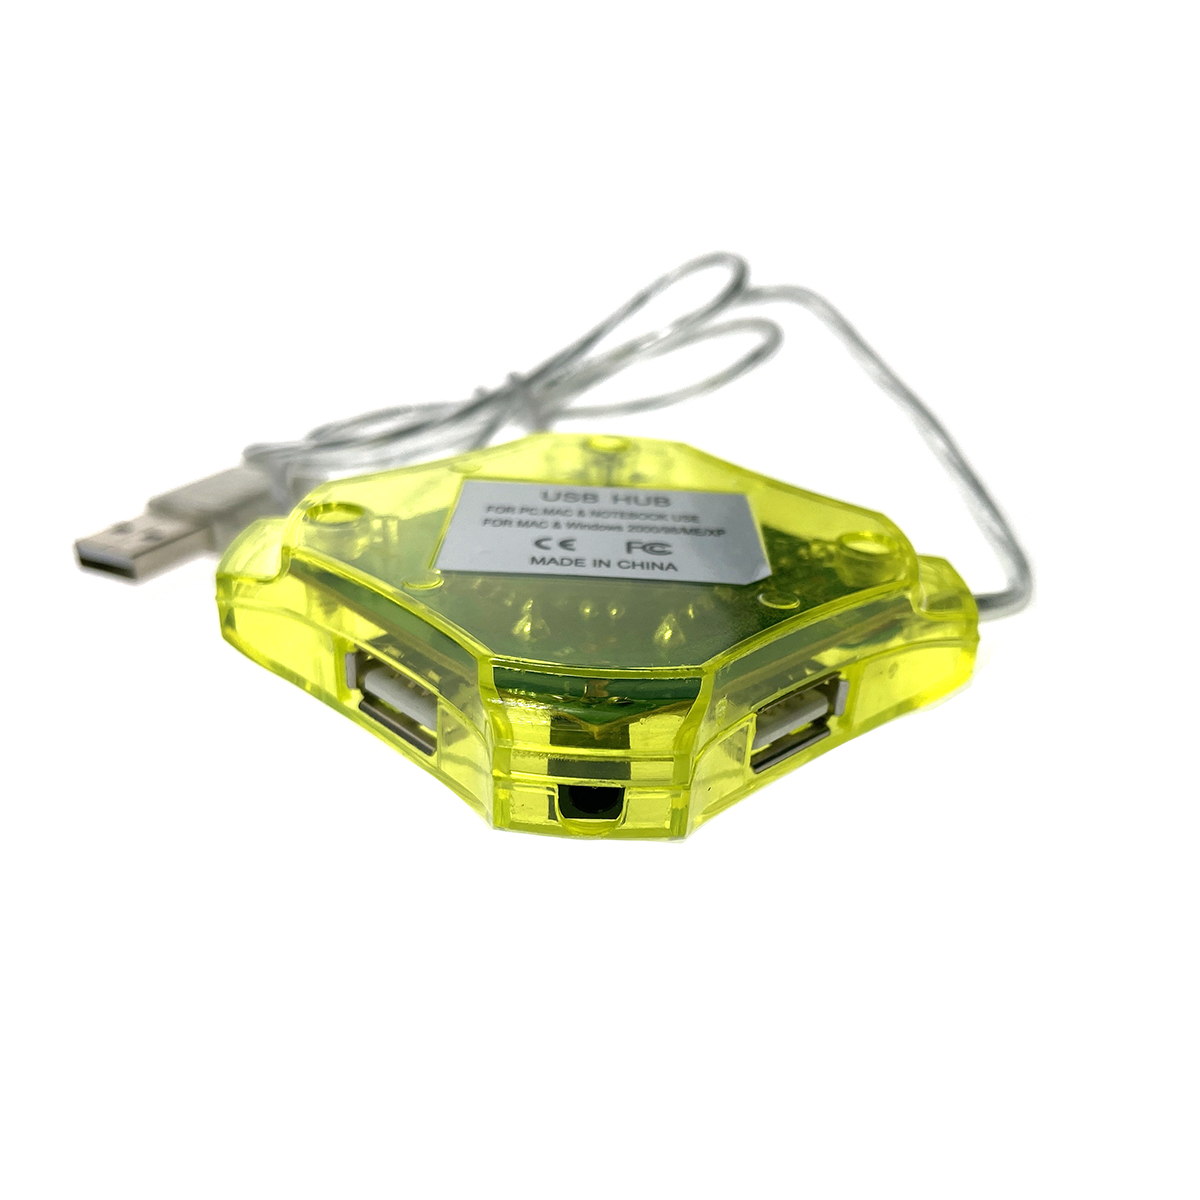 Разветвитель USB 2.0 - 4 порта, Eh420, желтый, длина кабеля 60см, хаб Espada